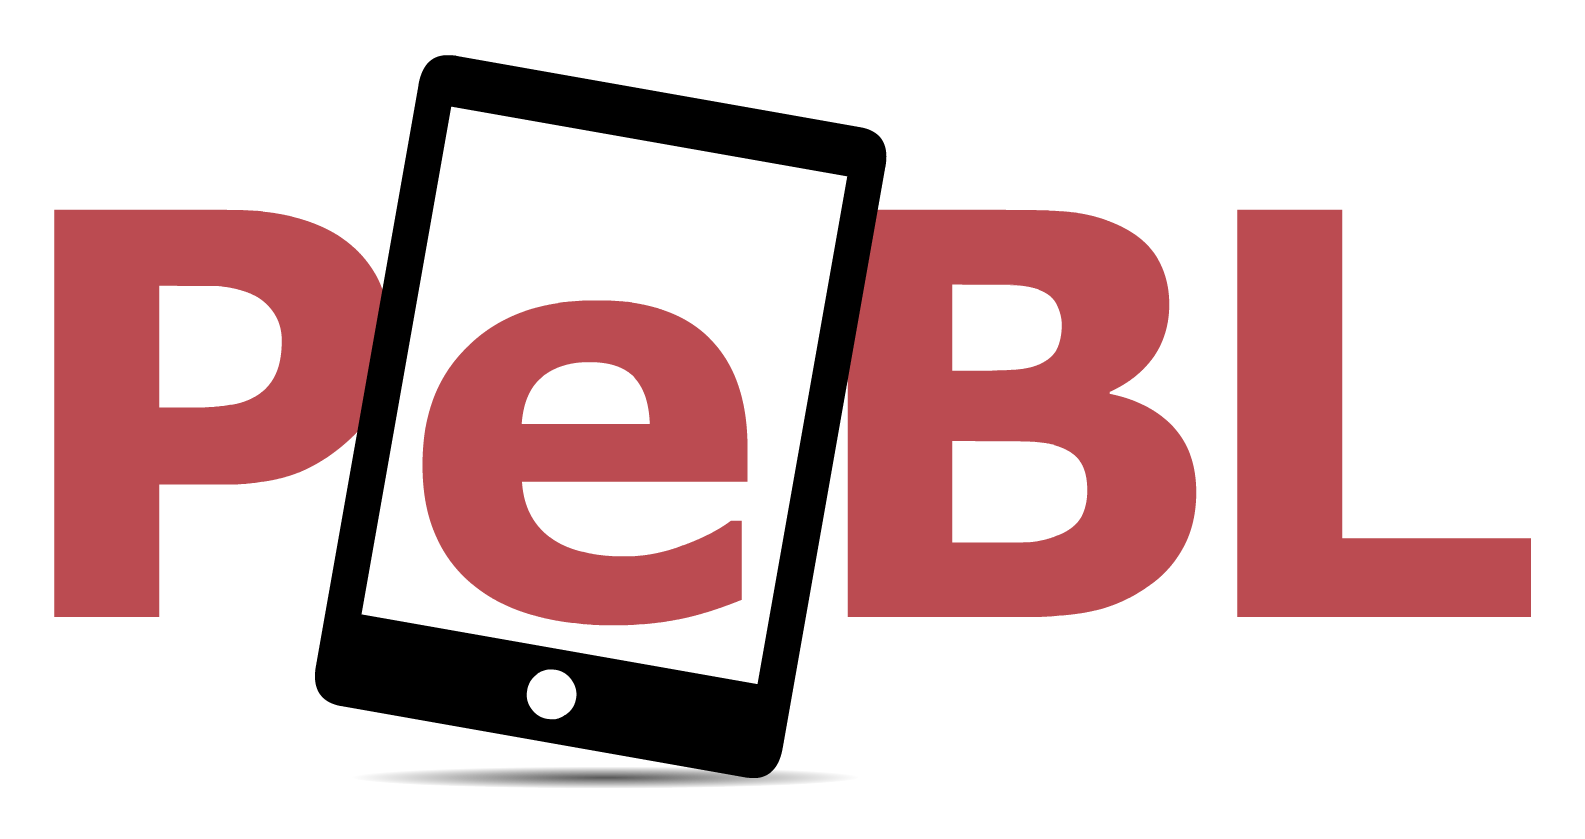 PEBL logo